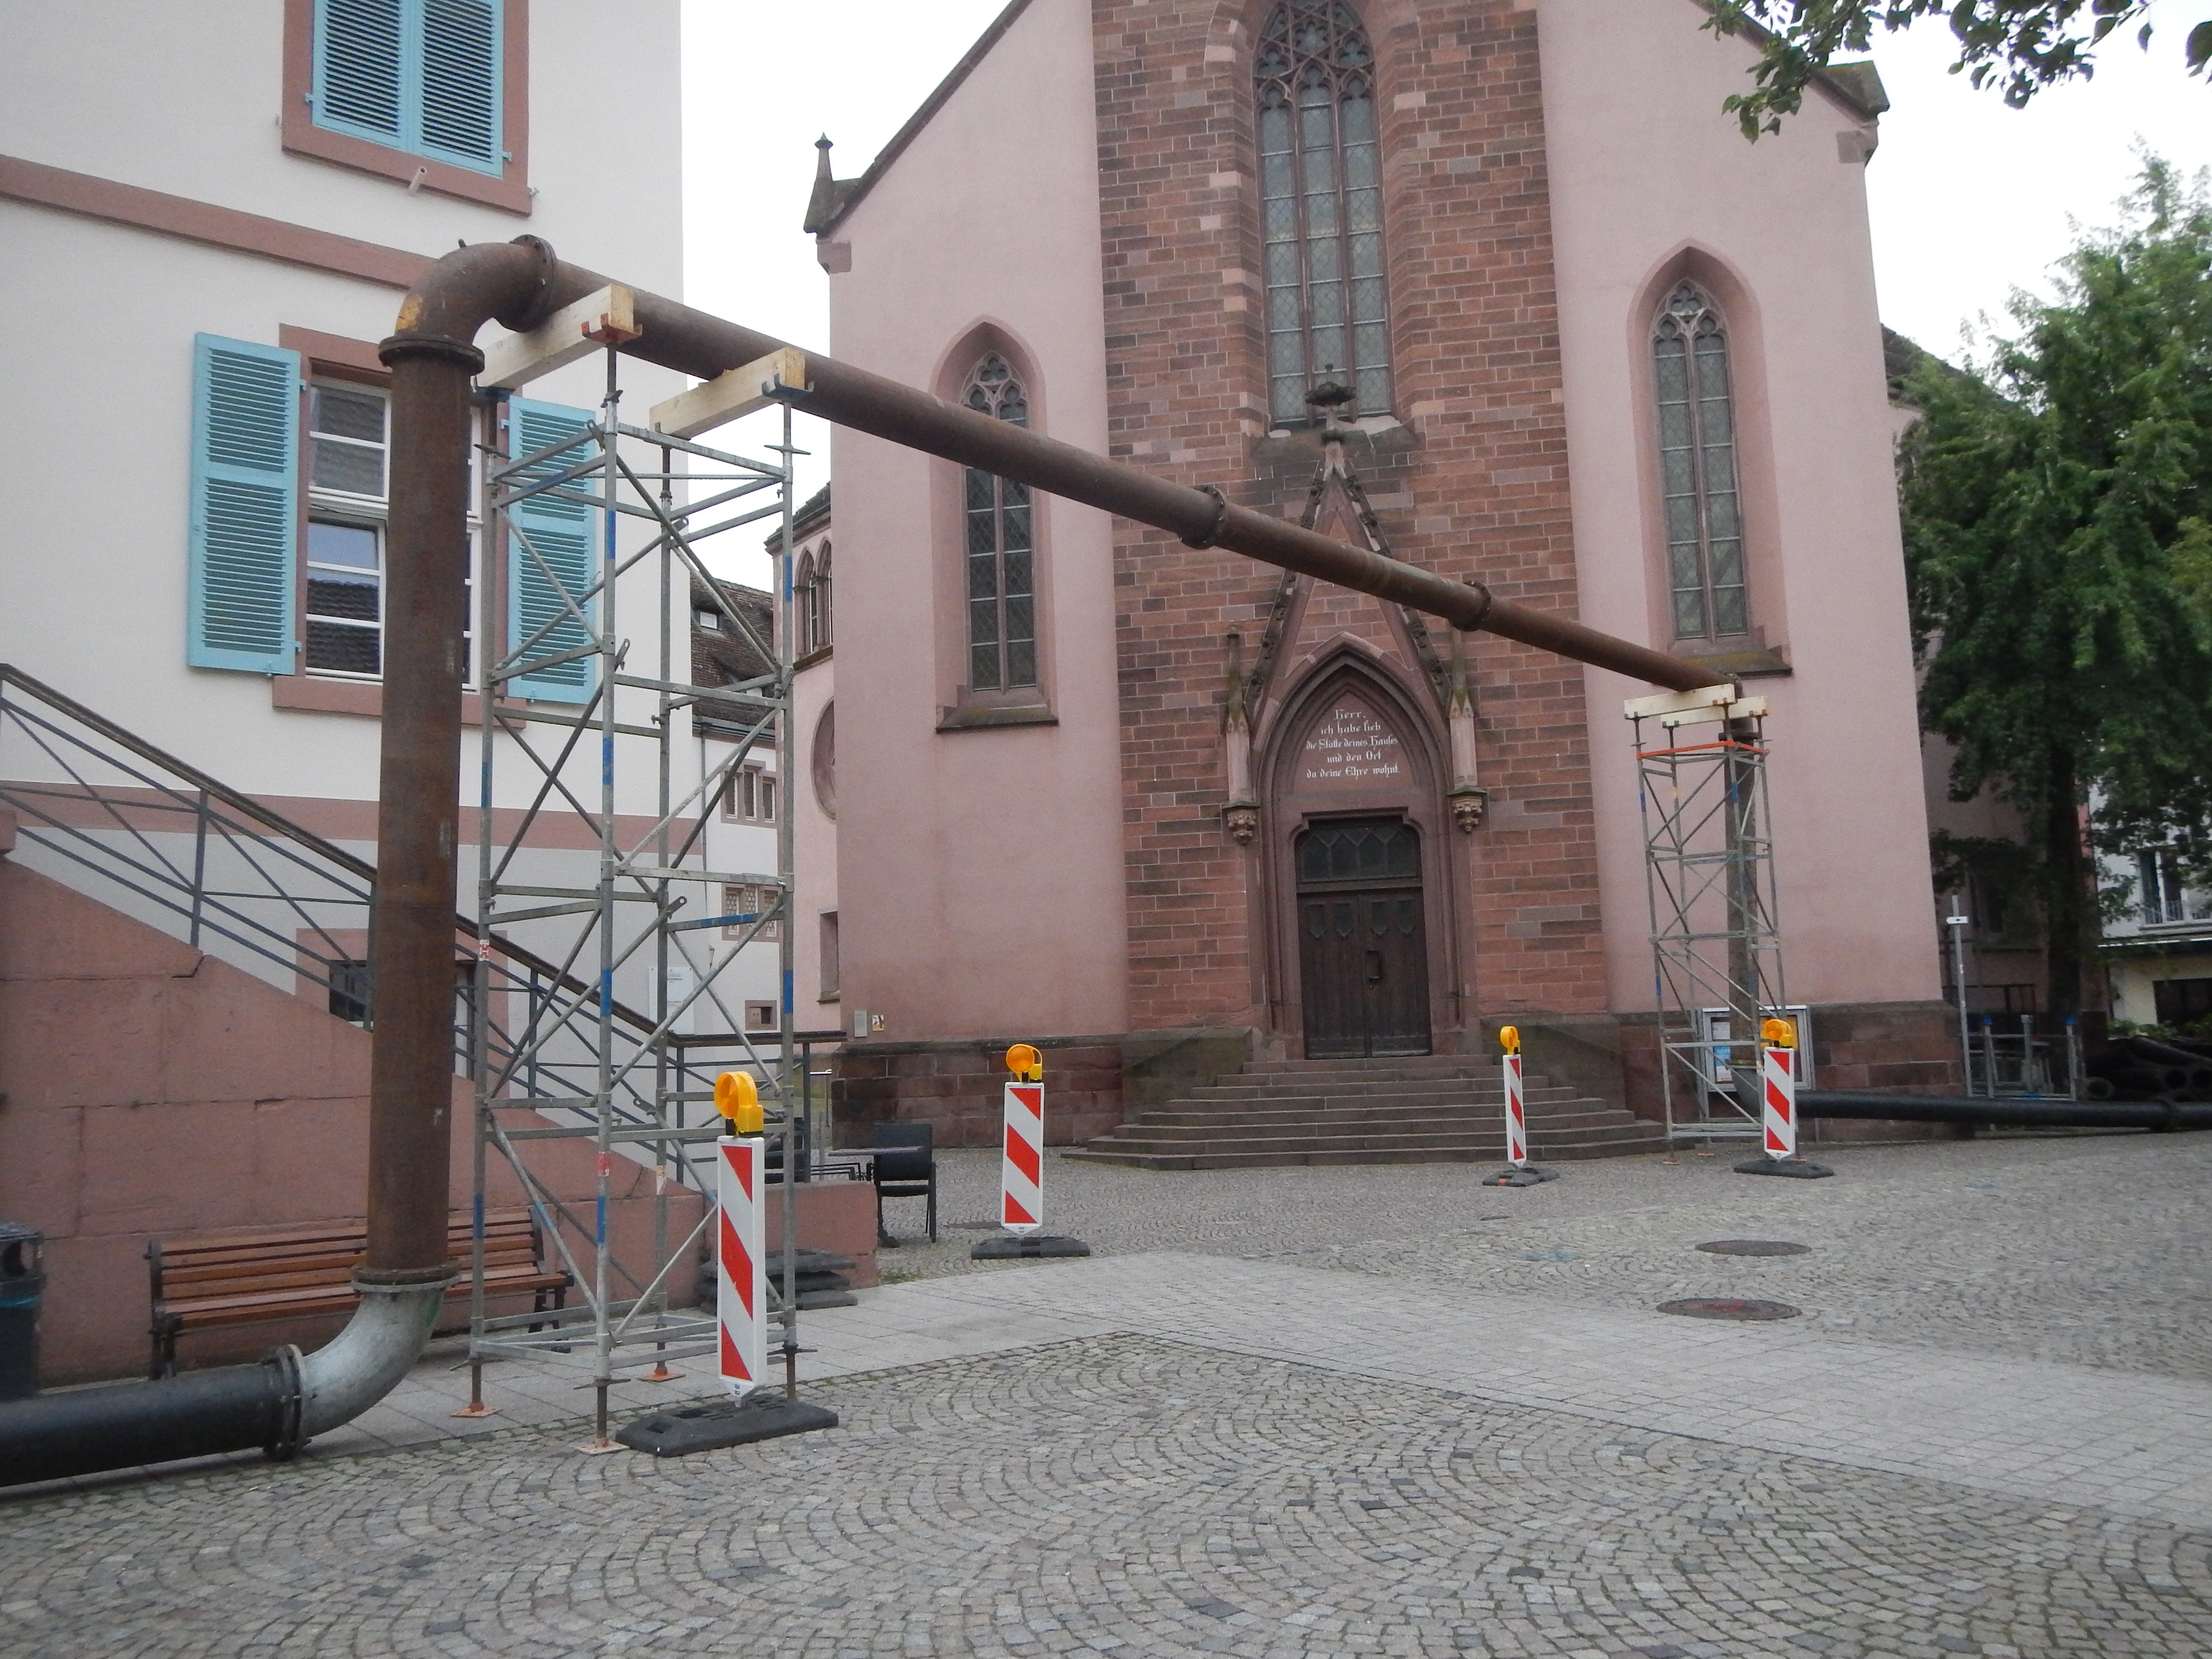                                                     Rohrkunst Stadtkirche 2017: Rohre, die zur Umleitung des Abwassers während der Sanierung der umliegenden Abwasserkanaäle benötigt wurden.                                    